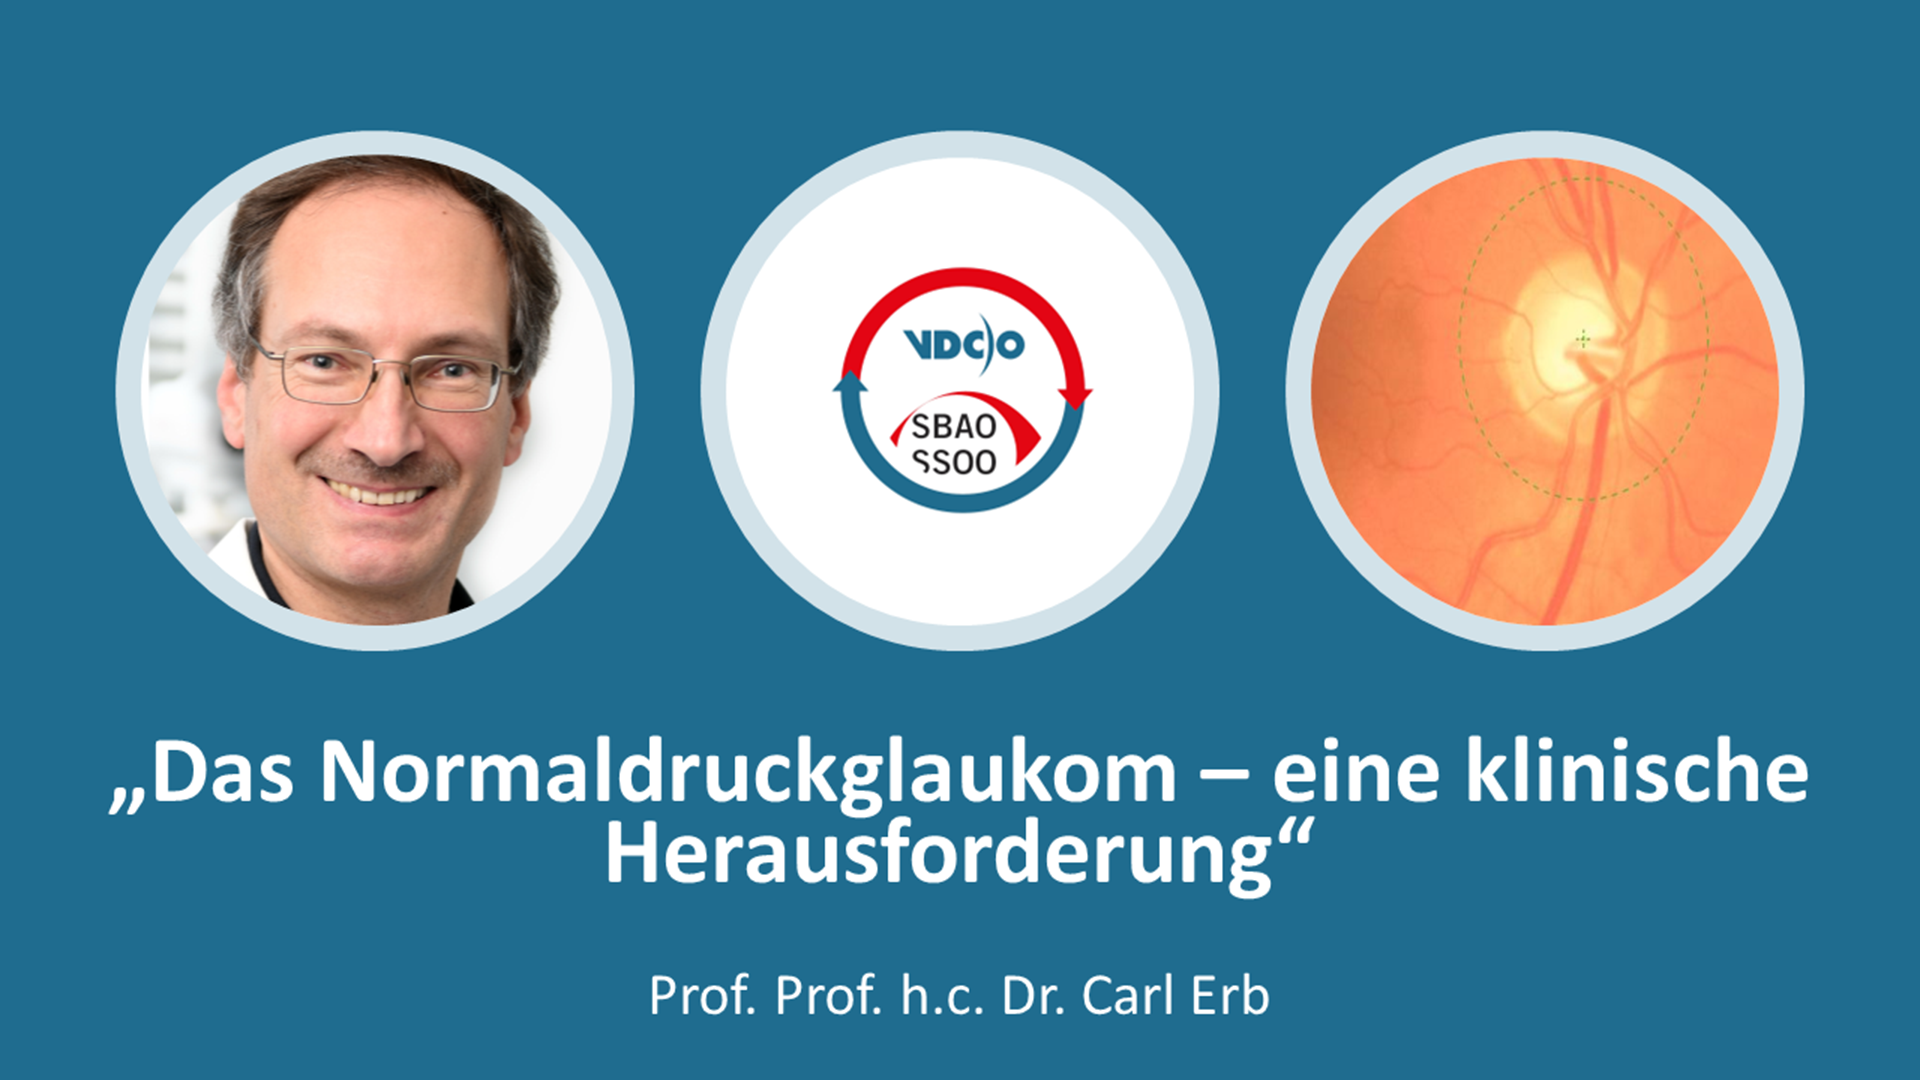 VDCO SBAO Webinar Das Normaldruckglaukom - eine klinische Herausforderung Carl Erb